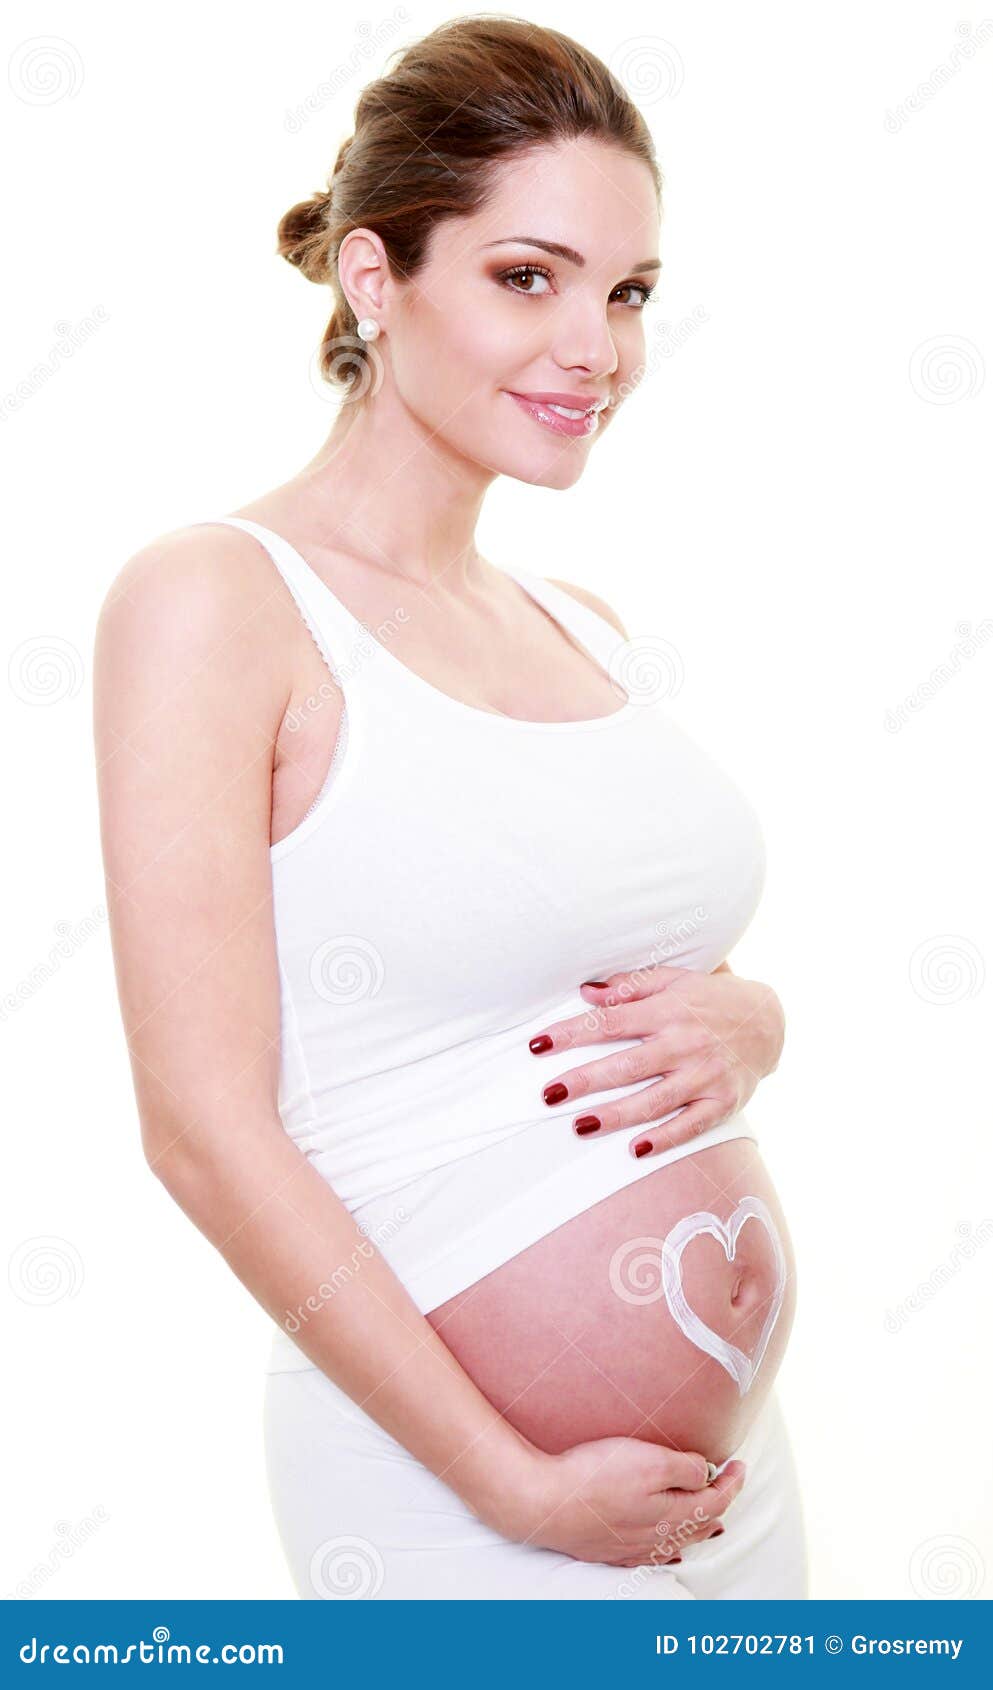 jeune femme brune enceinte avec un coeur sur le ventre.